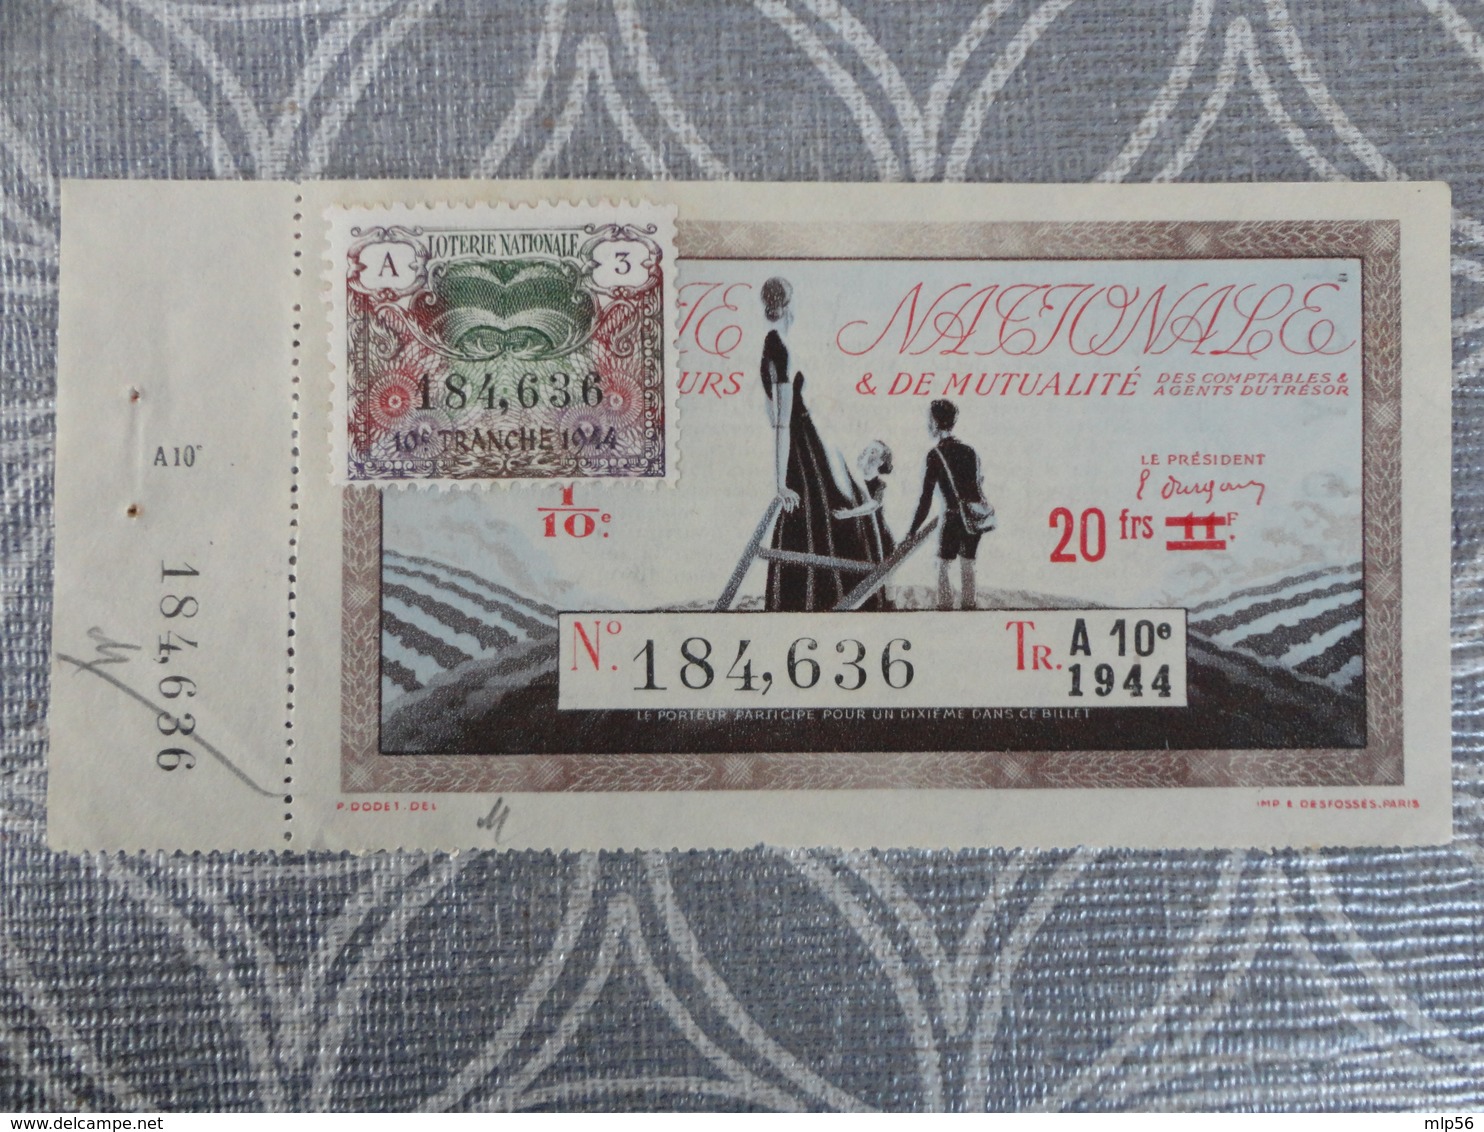 BILLET TICKET DE LOTERIE NATIONALE 1944 AVEC TALON  12.3 X 6 CM - Billets De Loterie